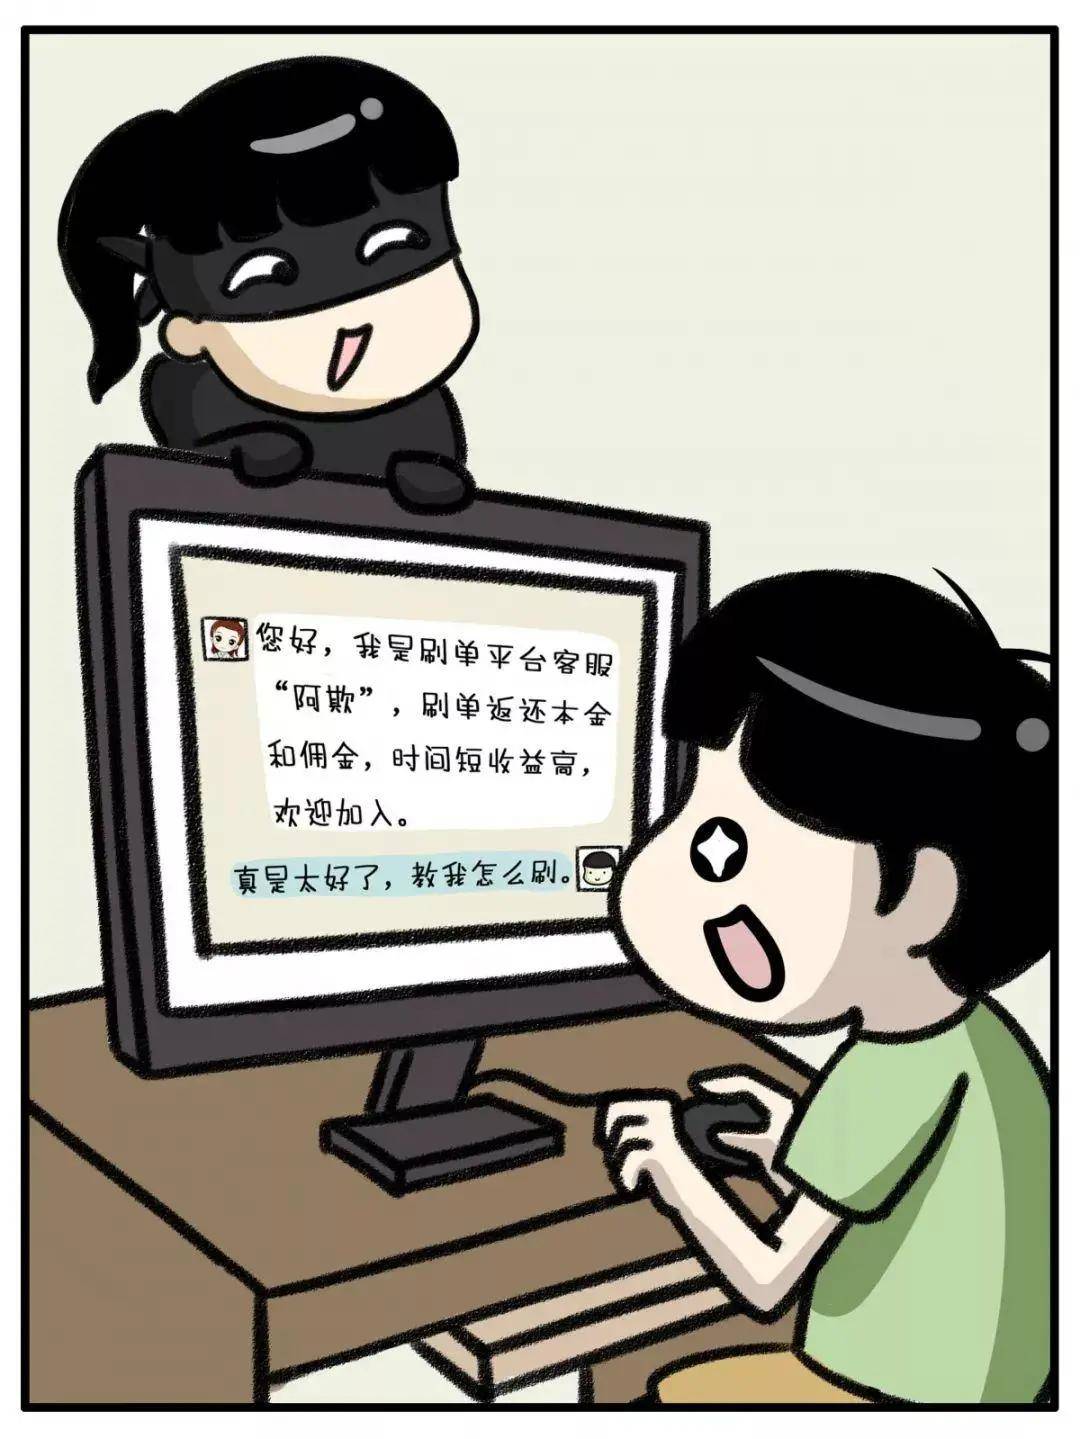 江苏省互联网协会